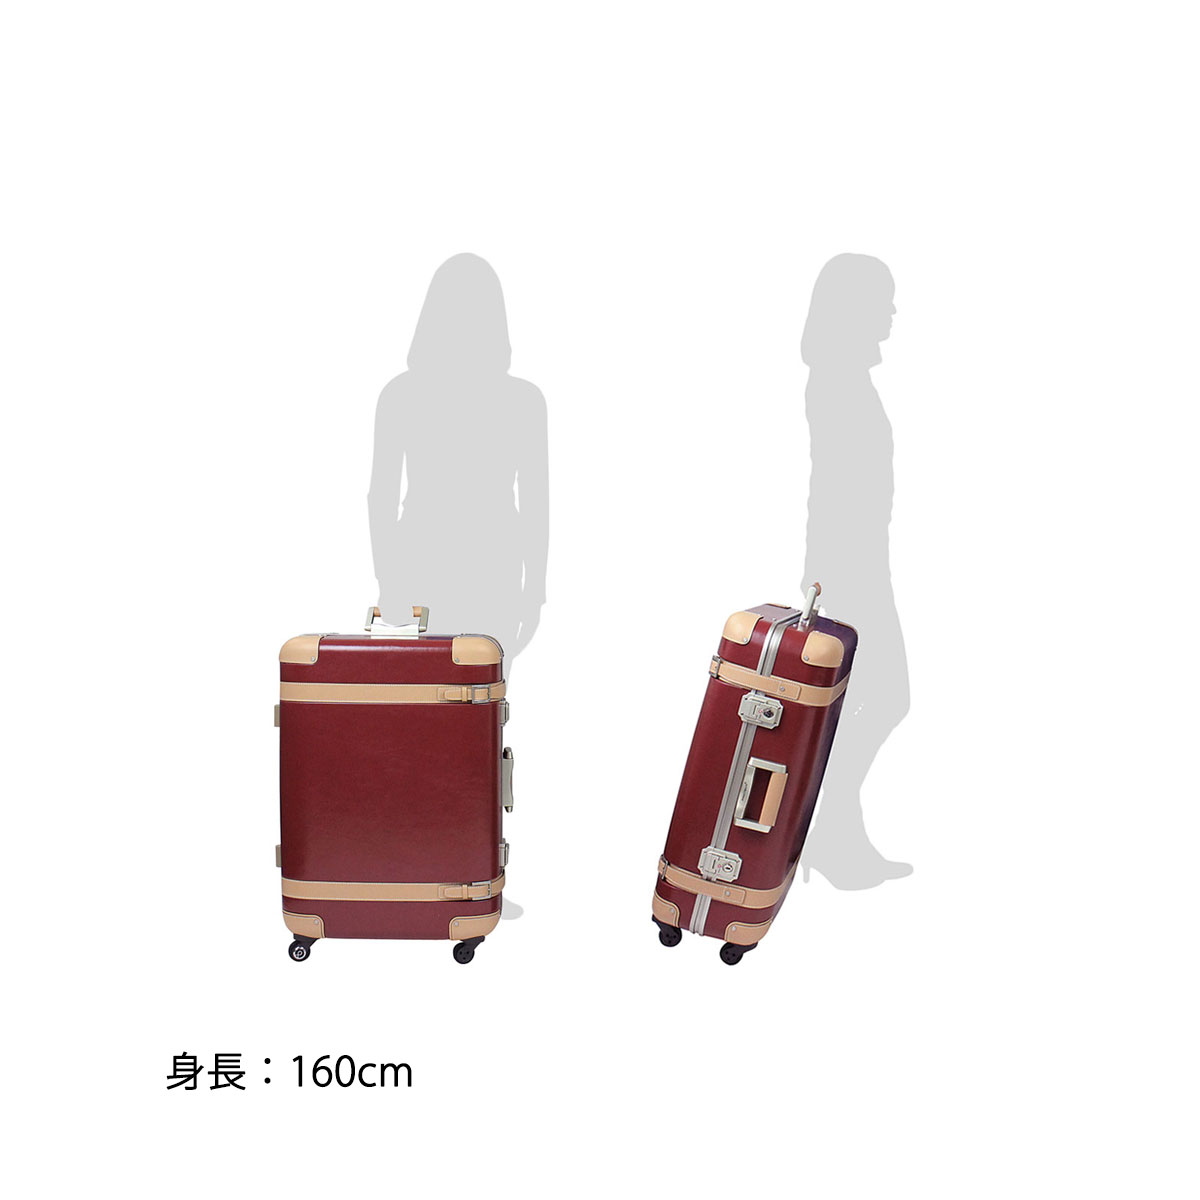  スーツケース・キャリーバッグ Lサイズ フレーム プロテカ／PROTECA ストラタム 80リットル  マグネシウム合金フレーム採用 日本製 キャリーバッグ キャリーケース 00853